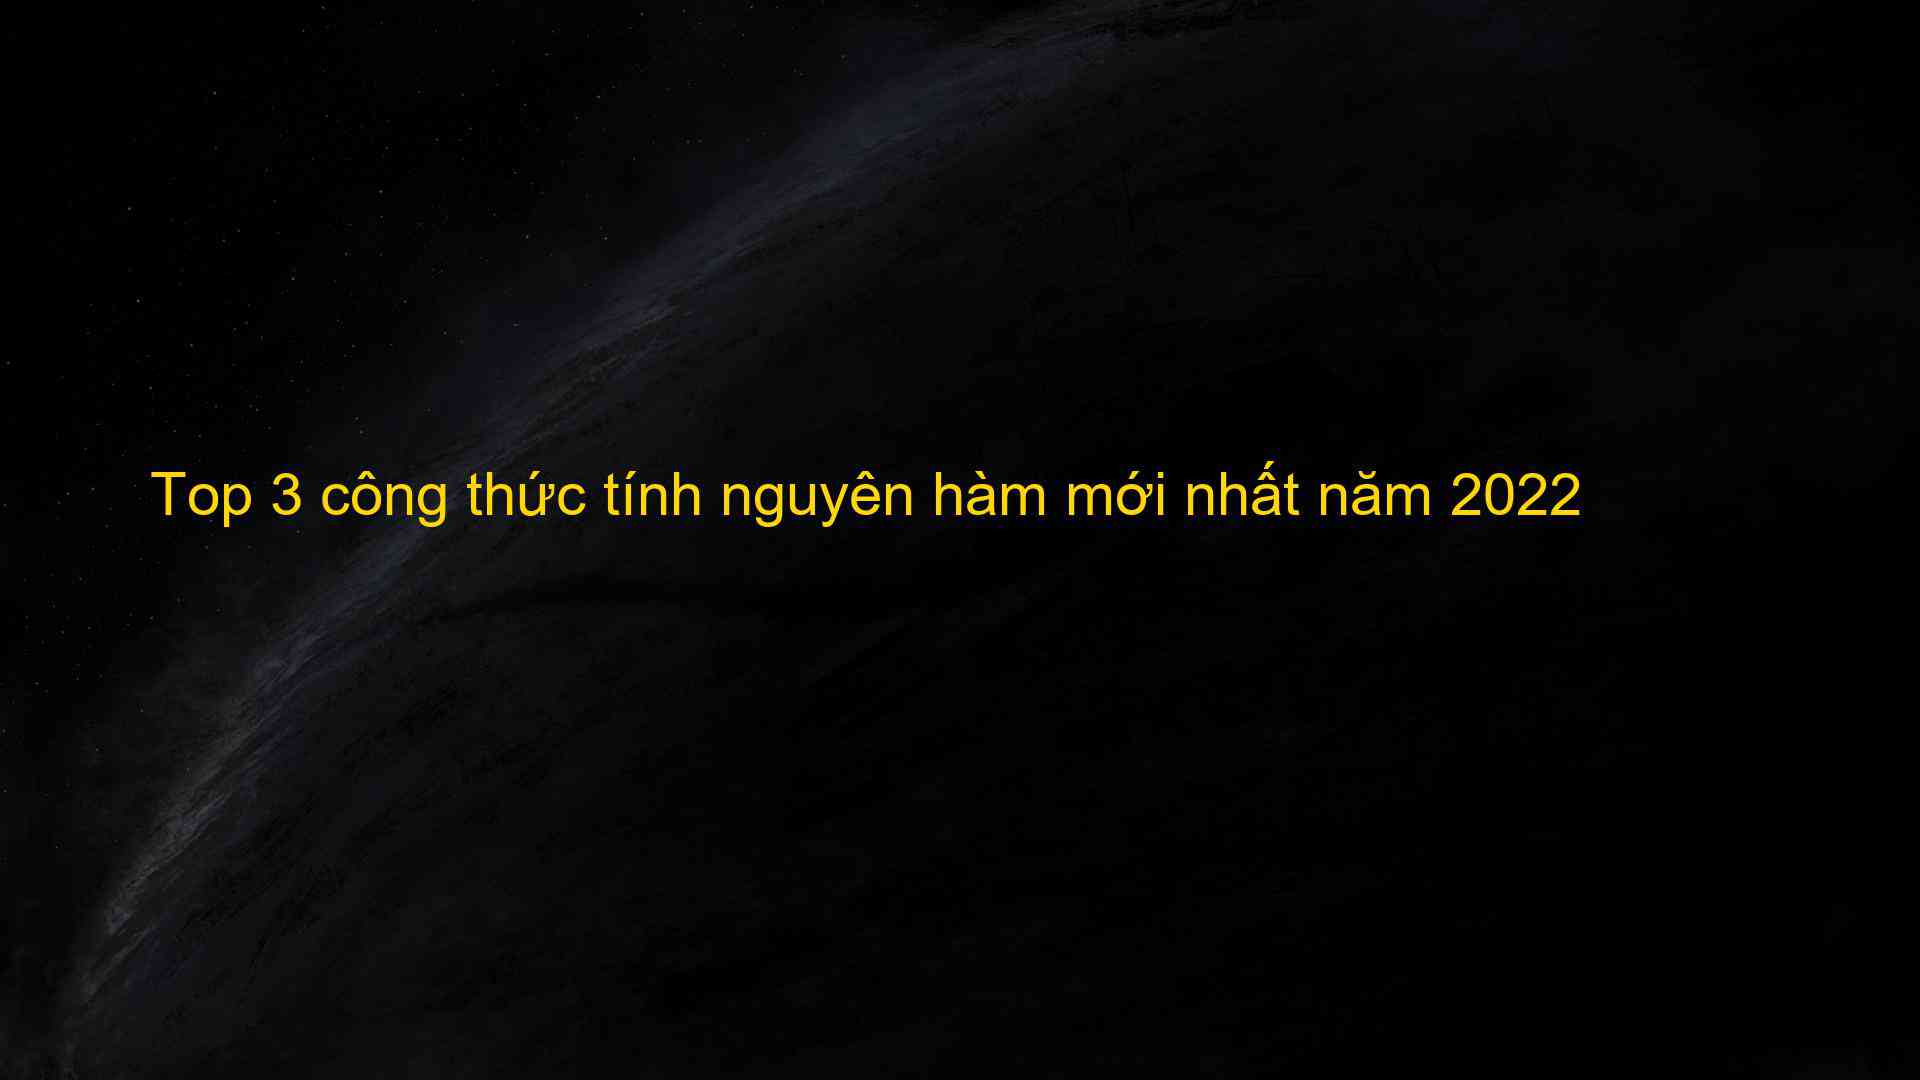 Top 3 cong thuc tinh nguyen ham moi nhat nam 2022 1659786956